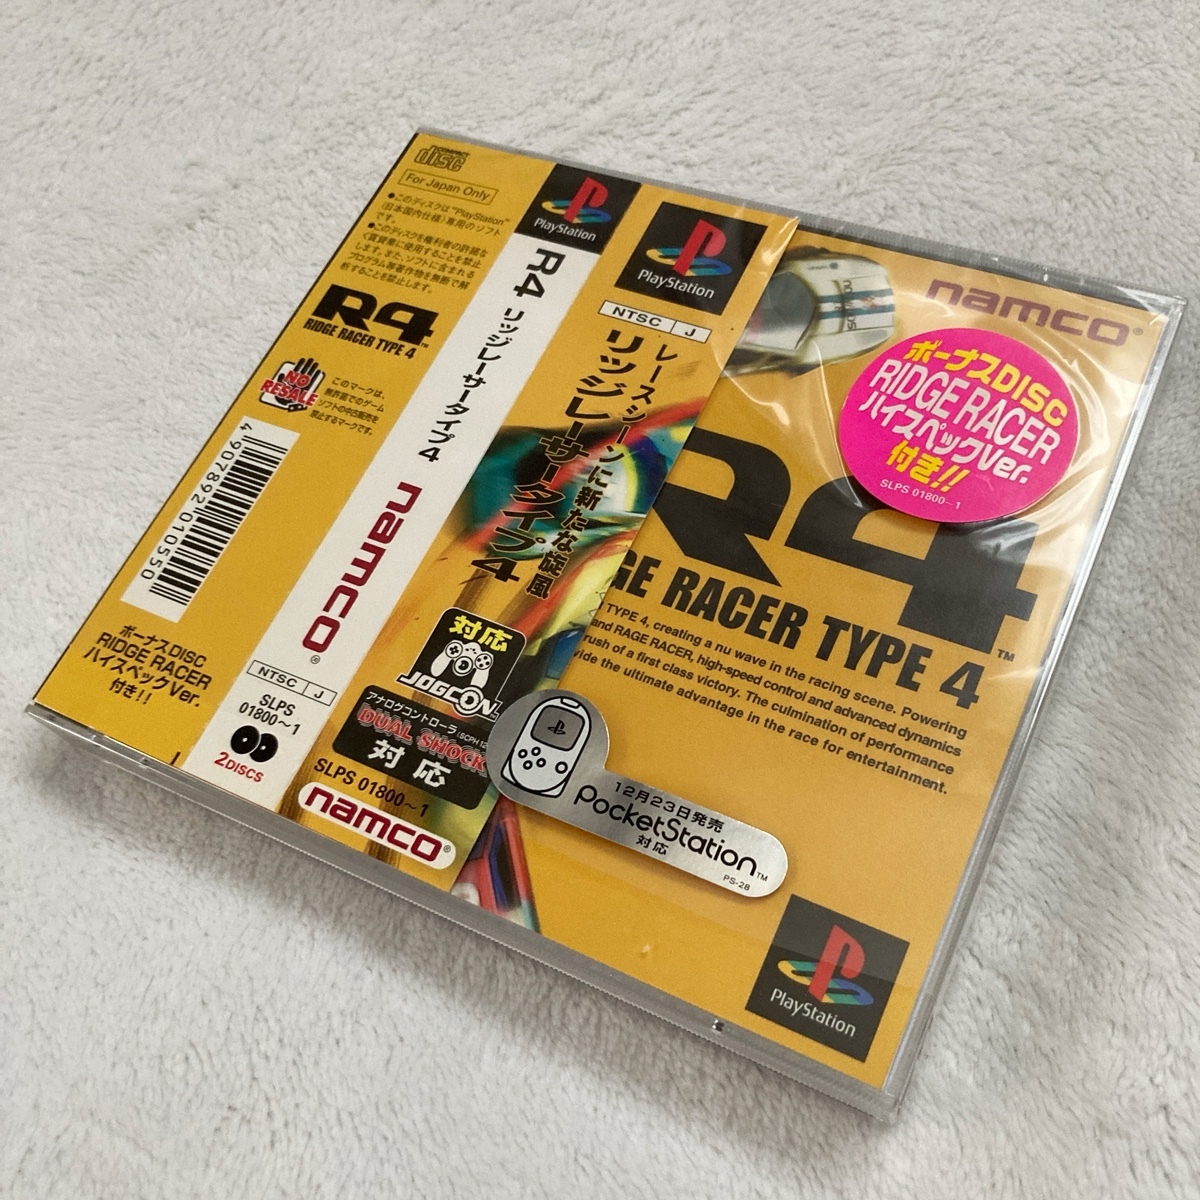 R4 リッジレーサー タイプ4 / ハガキ・帯付き / Ridge Racer Type4 プレイステーション PS PS1の画像1